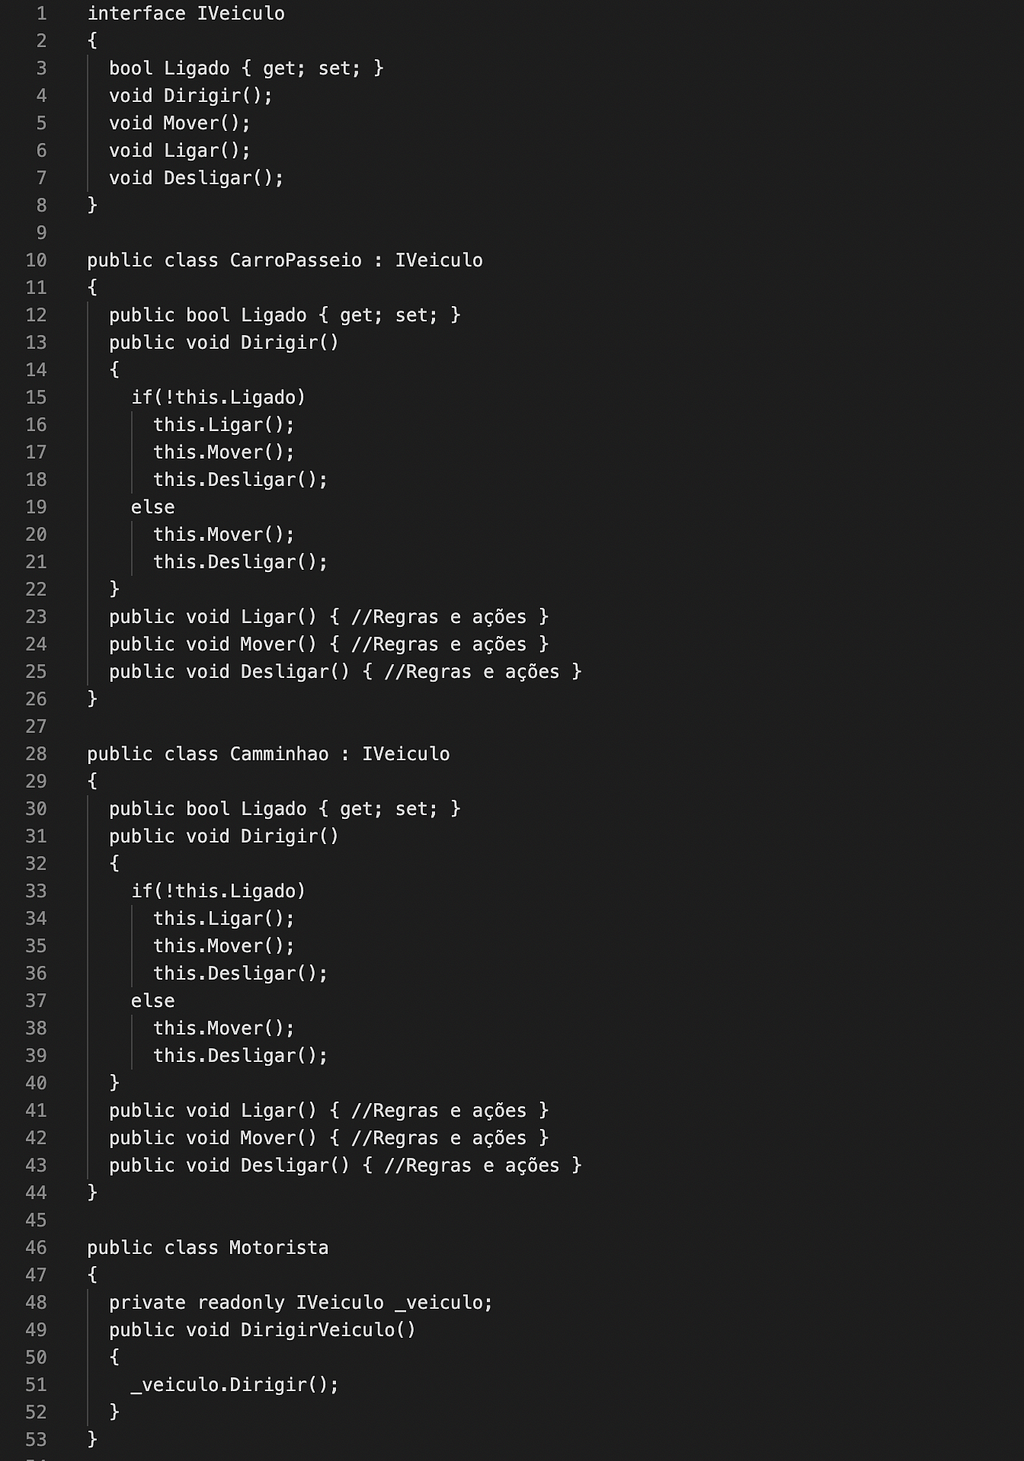 Trecho de código que demonstra 3classes que dependem da interface e não uma da outra diretamente, fazendo com que o código da classe principal não precise ser alterado por qualquer motivo.